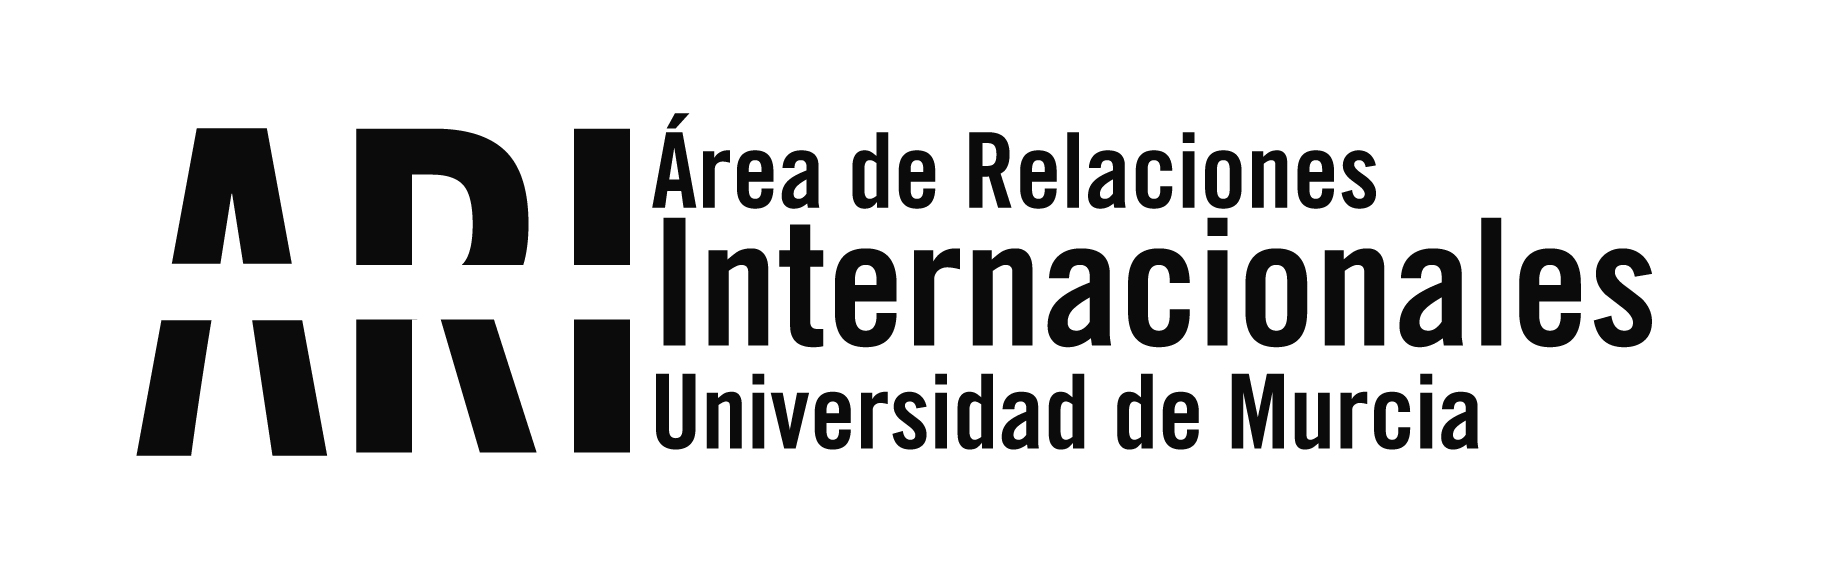 Bienvenida Universidad de Murcia Internacional 2017-18 - Área de Relaciones Internacionales